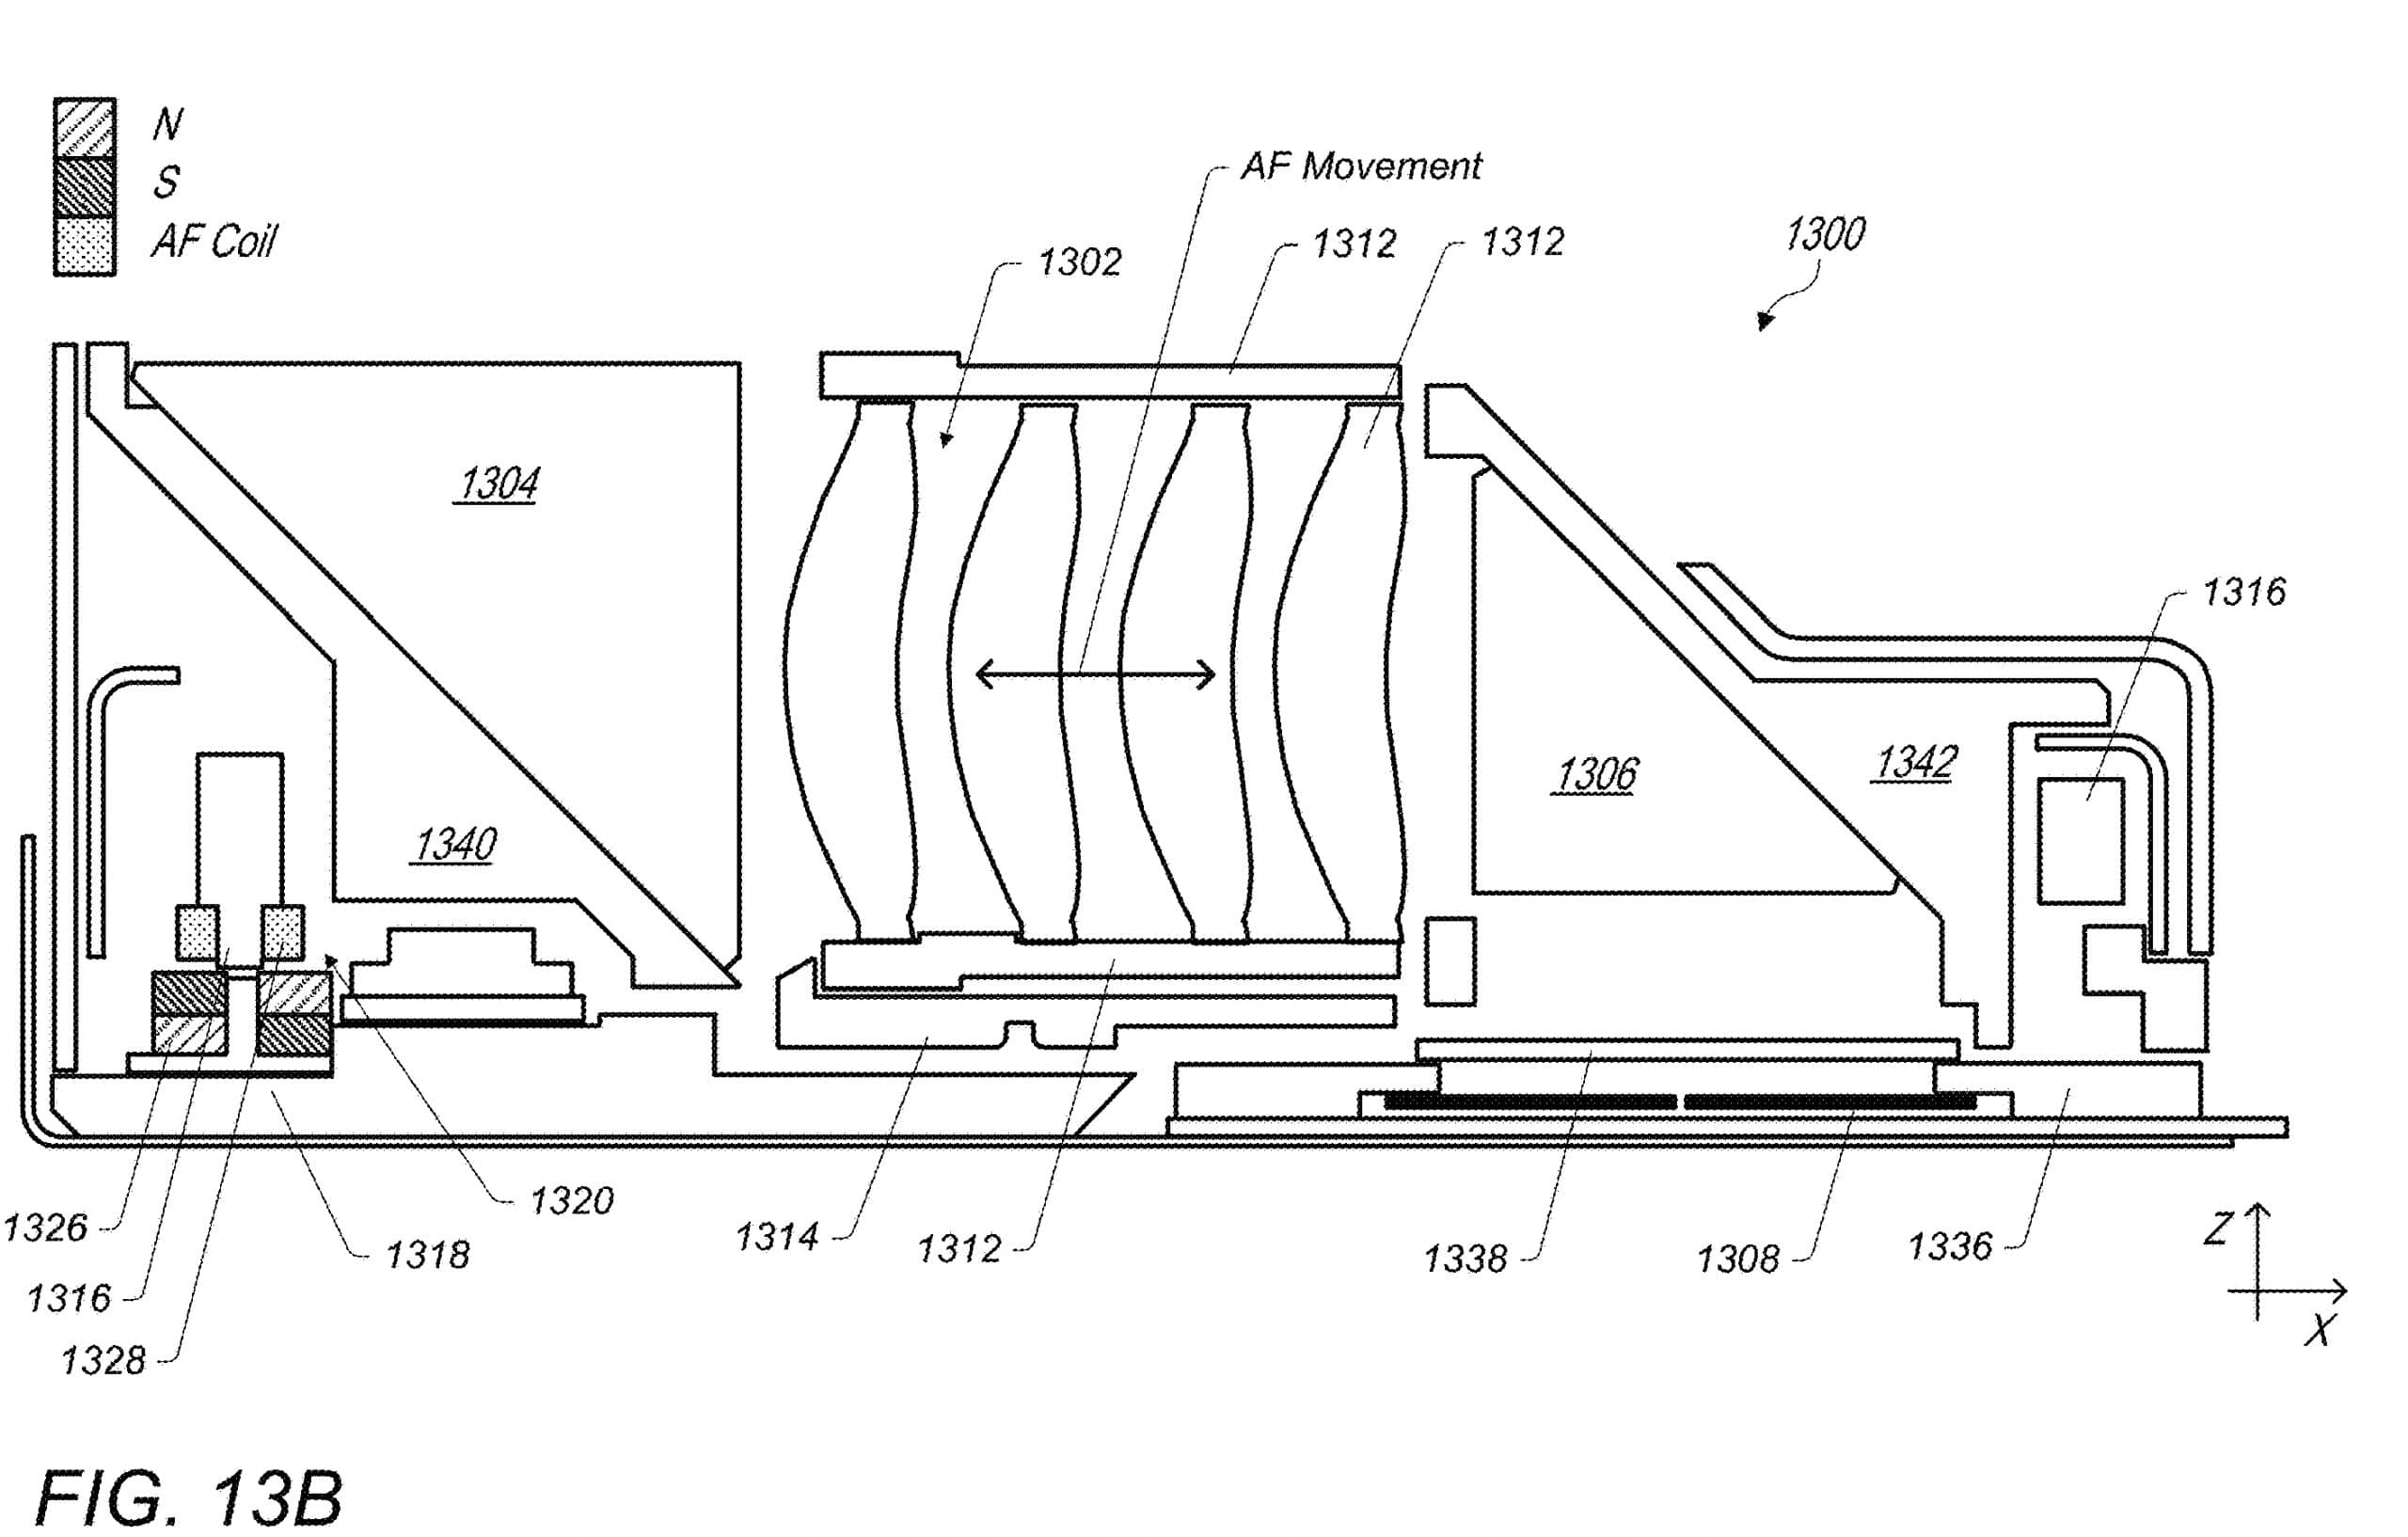 Apple có bằng sáng chế mới về camera gập tích hợp chống rung quang học